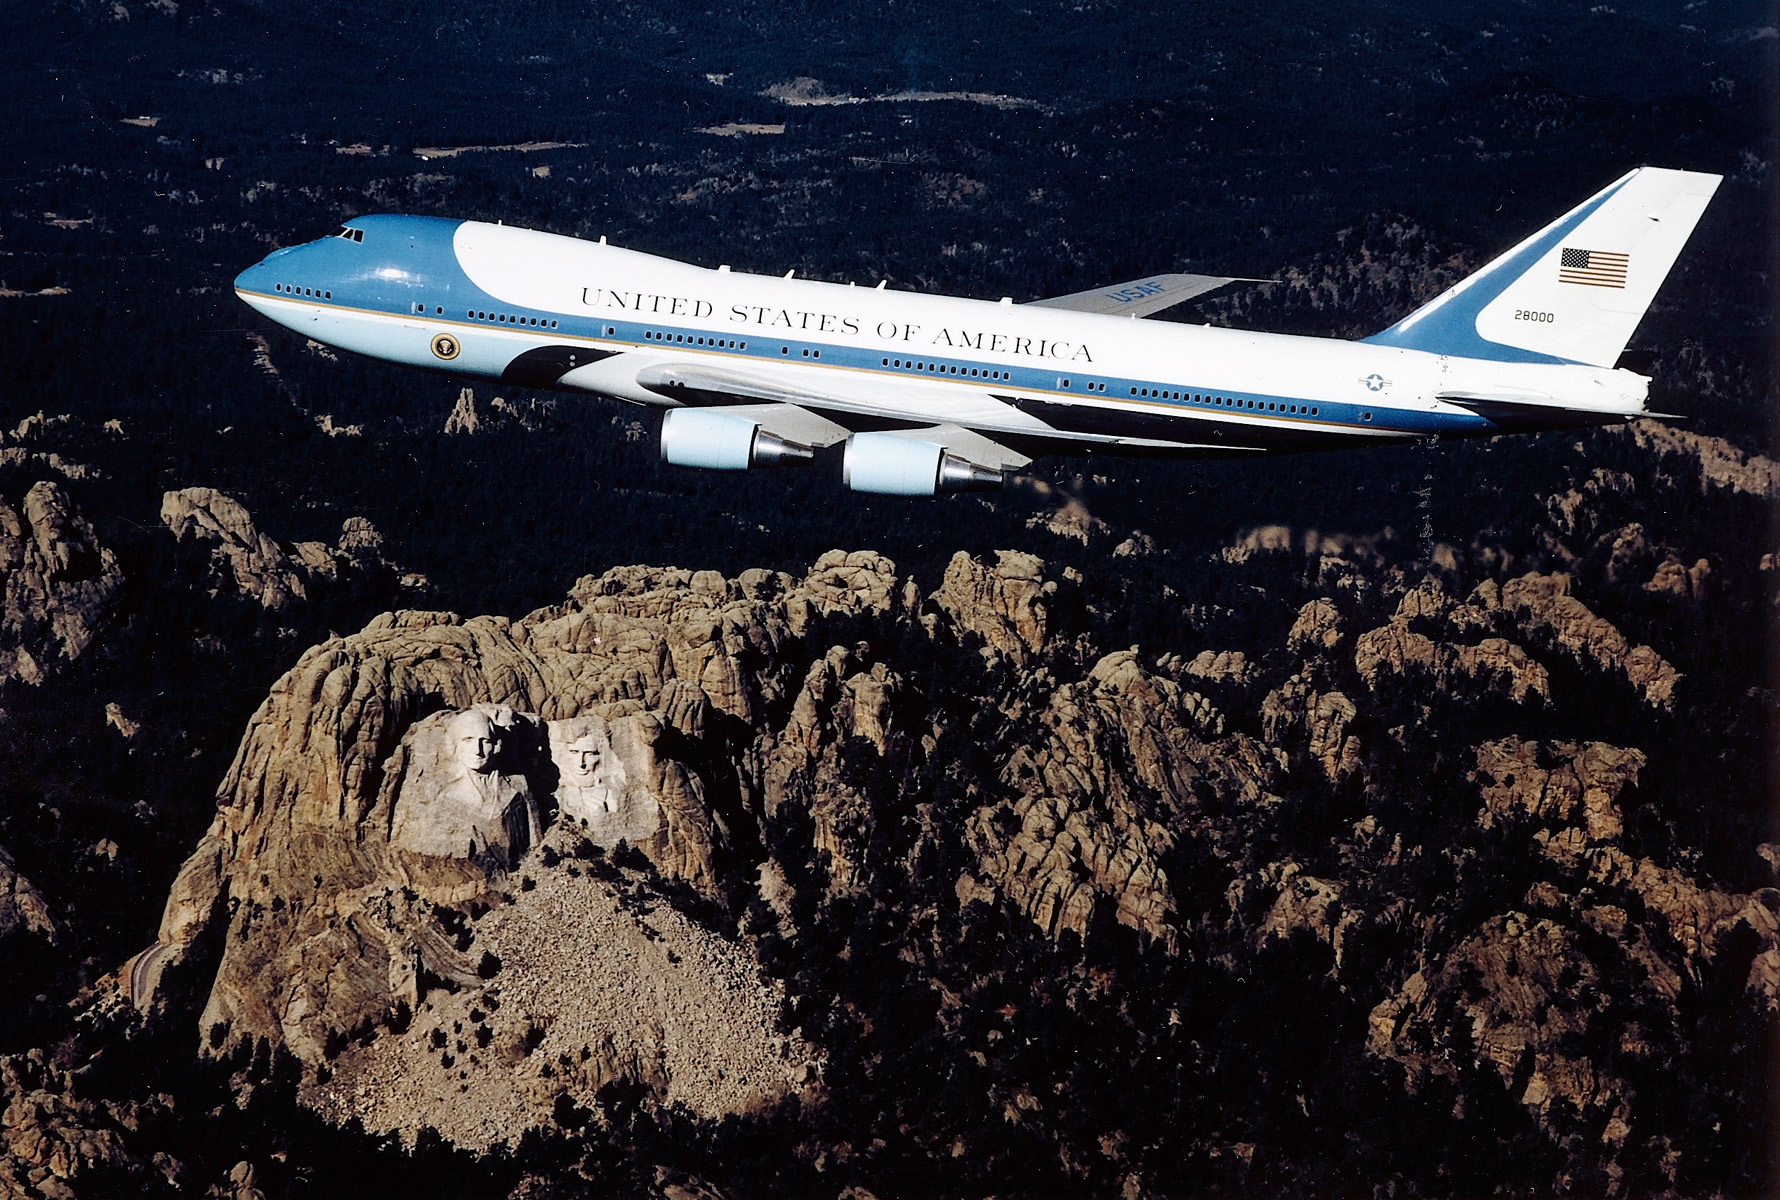 Egy klasszikus fotó az elnöki gépről az egykori elnökök felett